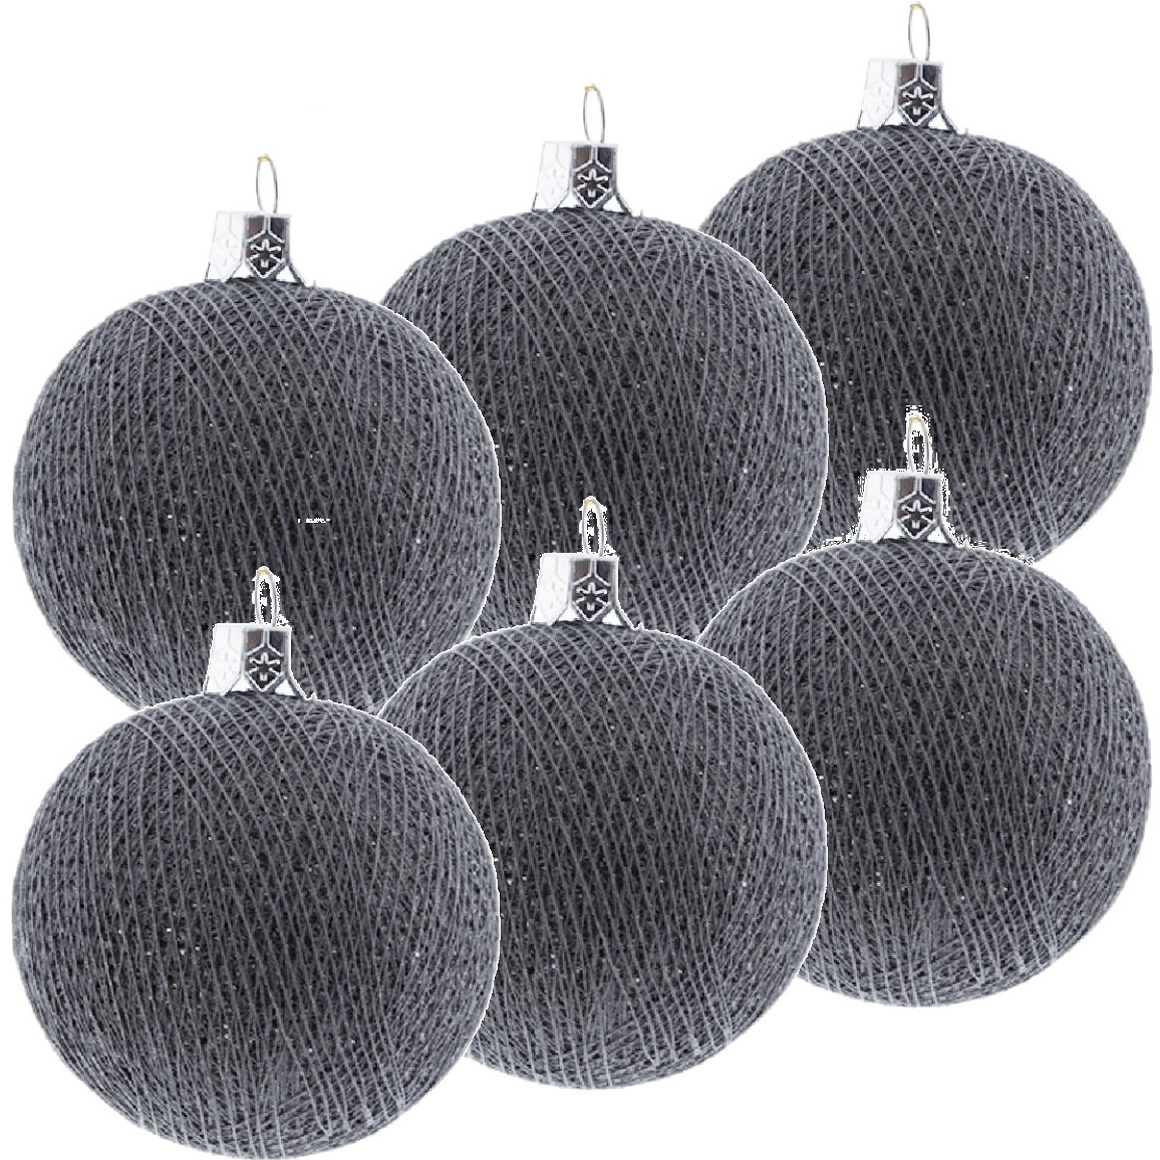 6x Grijze Cotton Balls kerstballen decoratie 6,5 cm